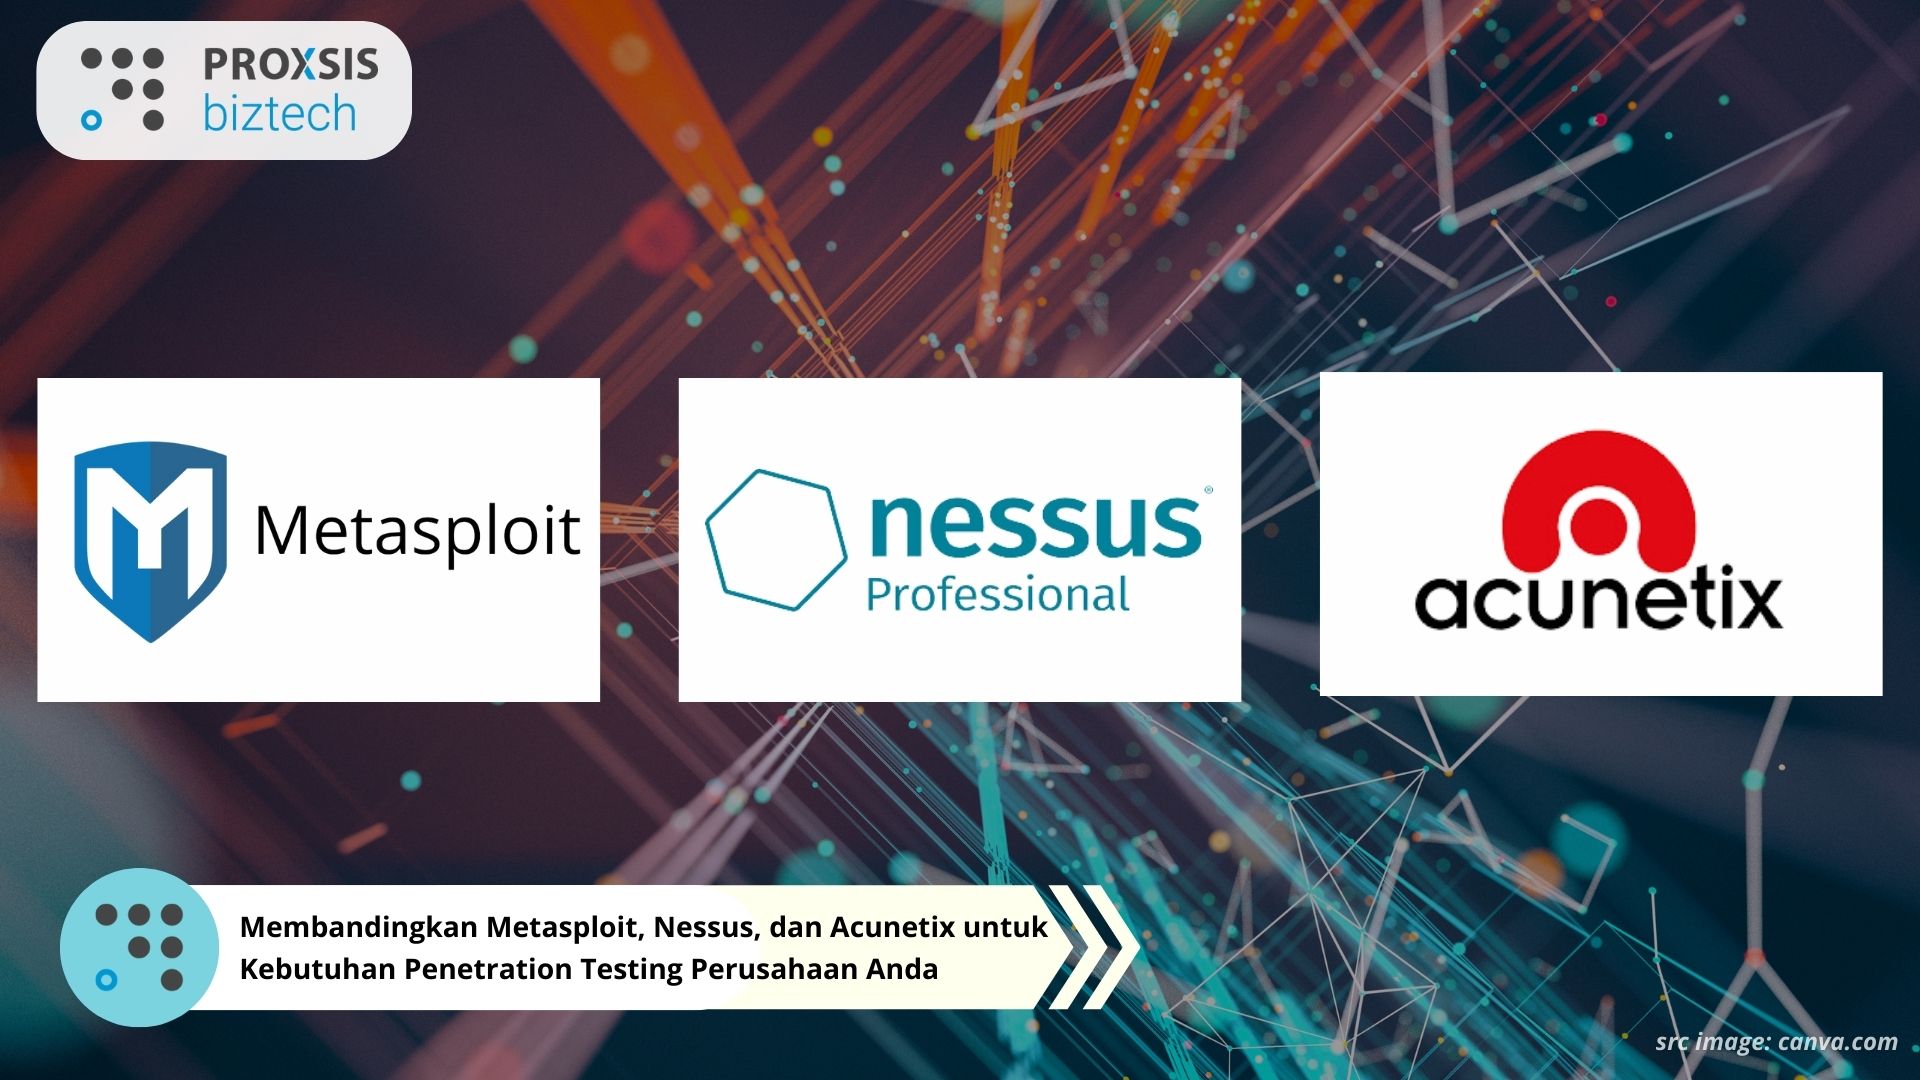 Membandingkan Metasploit, Nessus, dan Acunetix untuk Kebutuhan Penetration Testing Perusahaan Anda